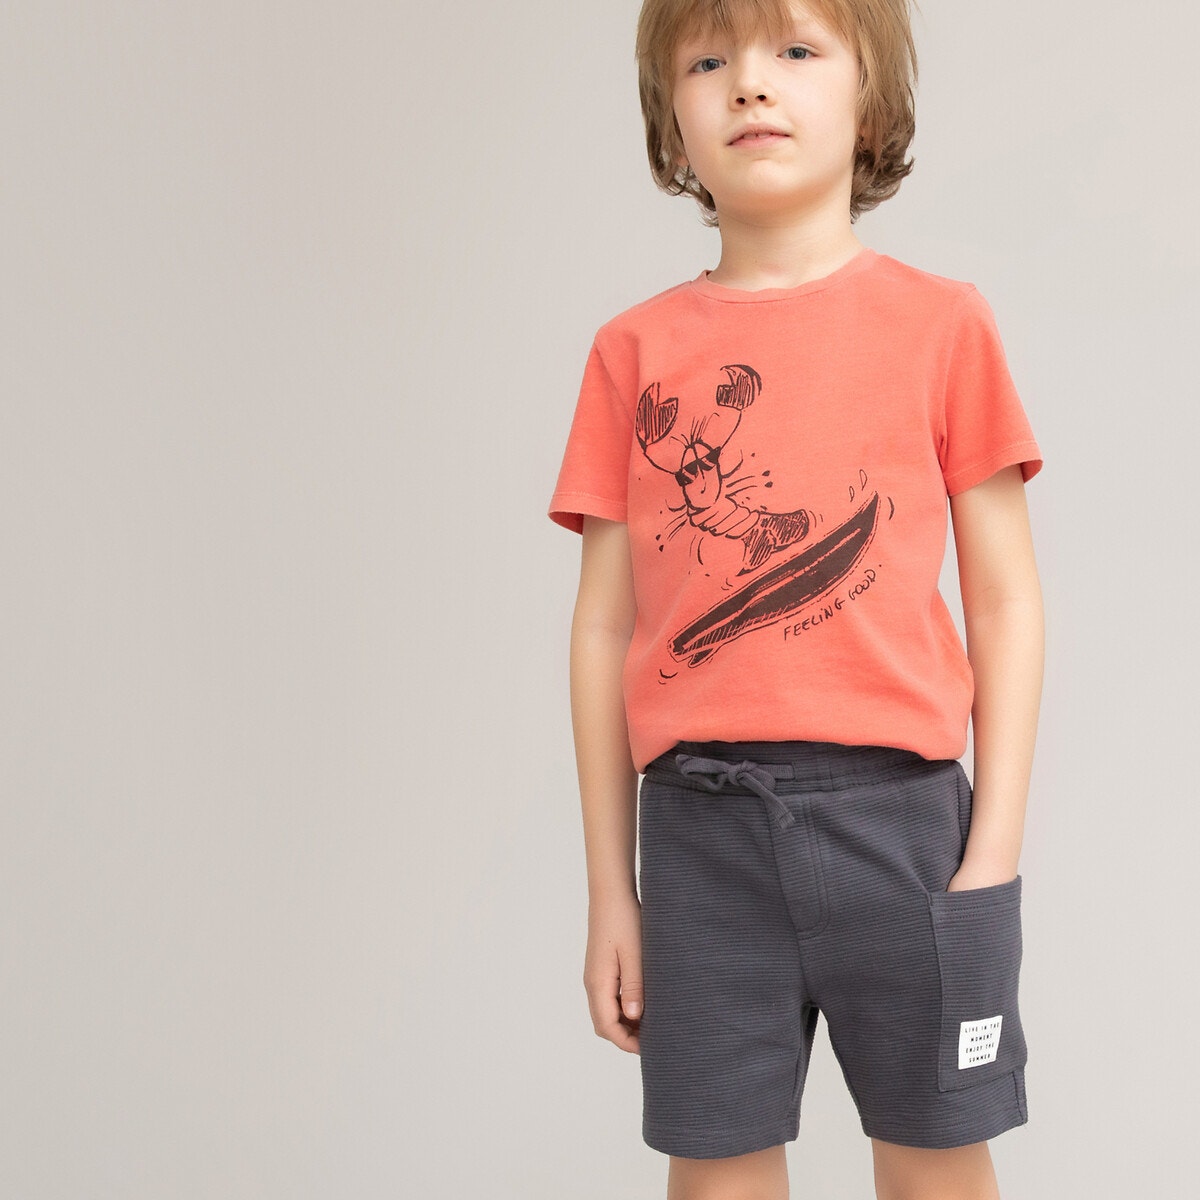 ΠΑΙΔΙ | Μπλούζες & Πουκάμισα | T-shirts Μπλούζα από βιολογικό βαμβάκι, 3-12 ετών